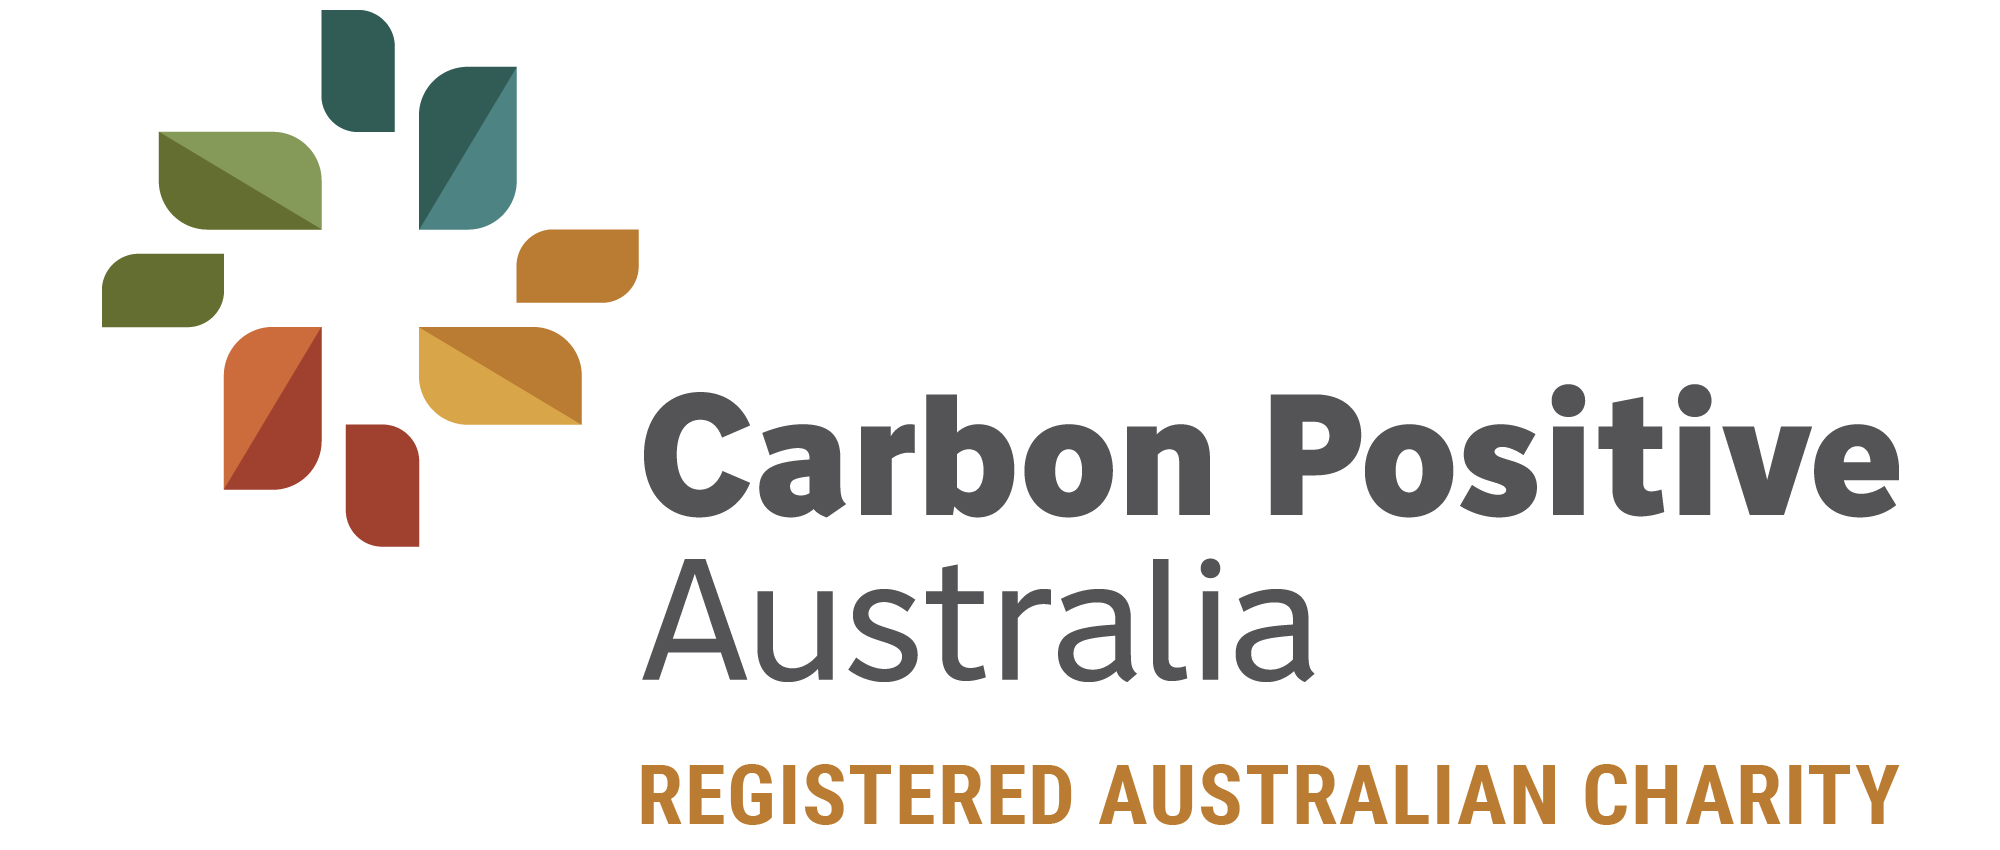 Carbon Positive Australia